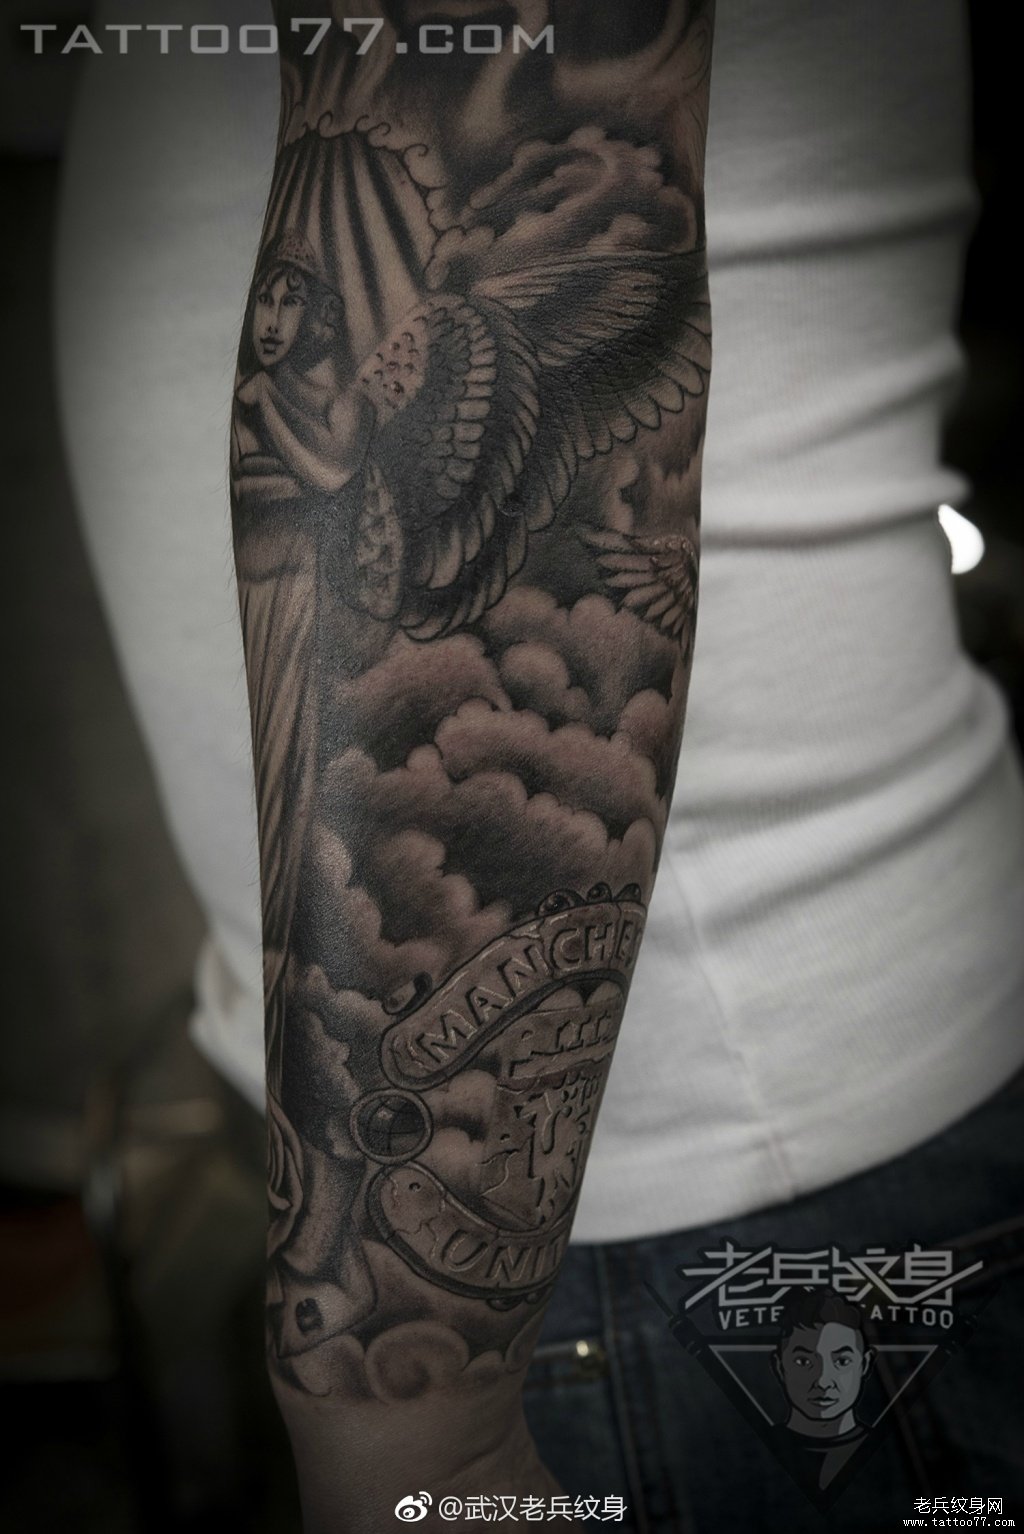 欧美花臂天使纹身纹身图案作品